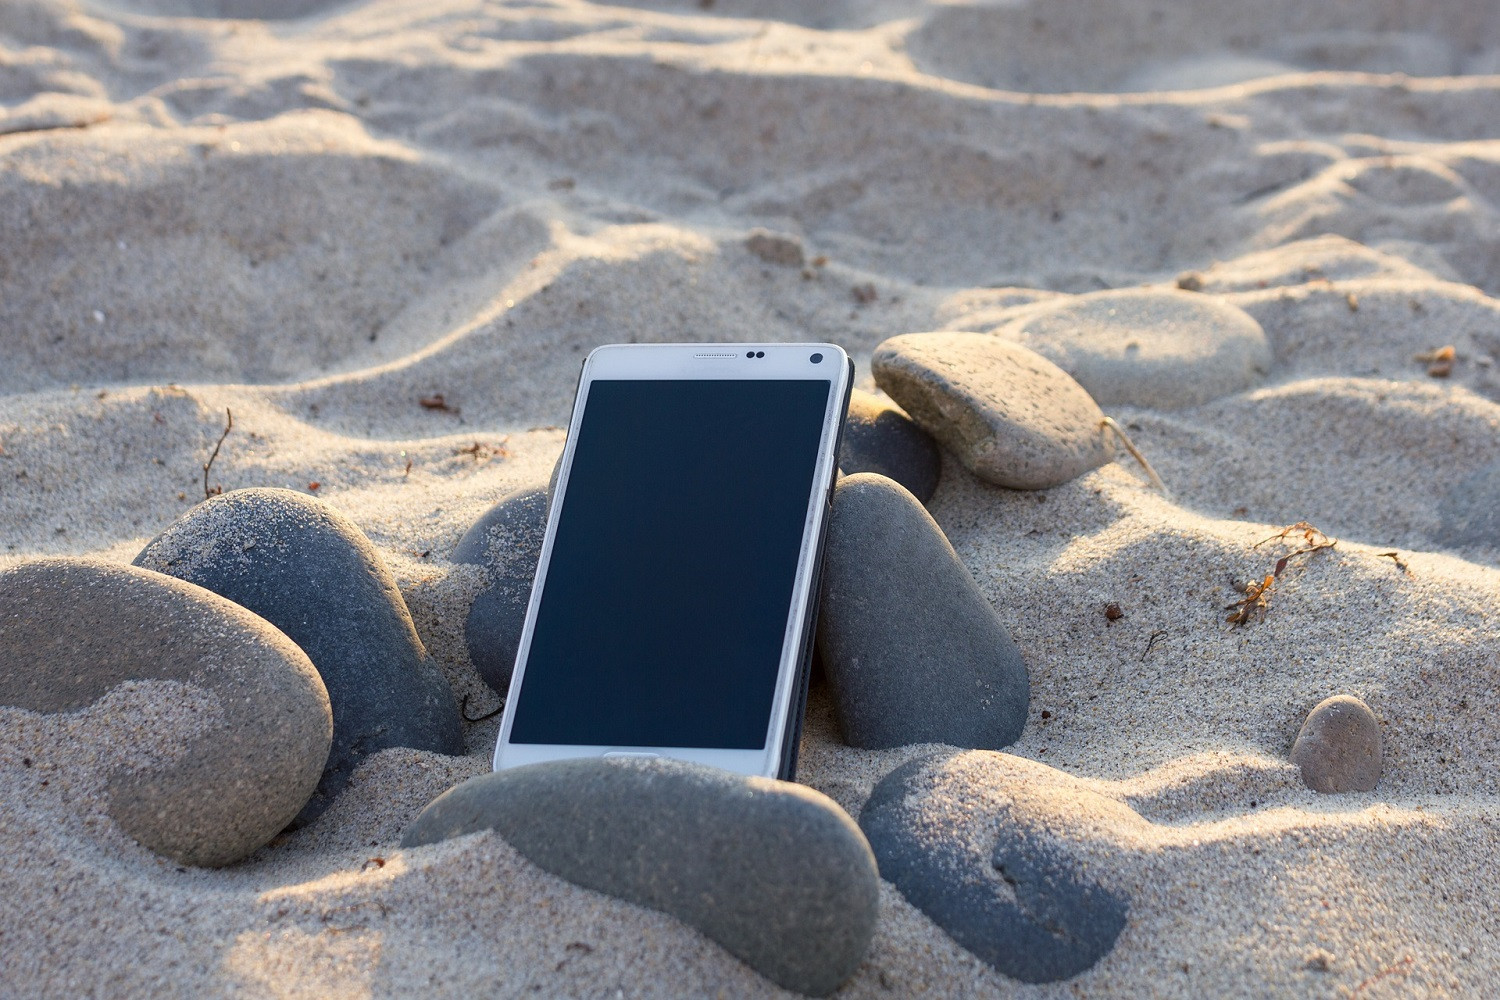 Οι 2+1 κανόνες που πρέπει να τηρείς με το κινητό σου στην παραλία